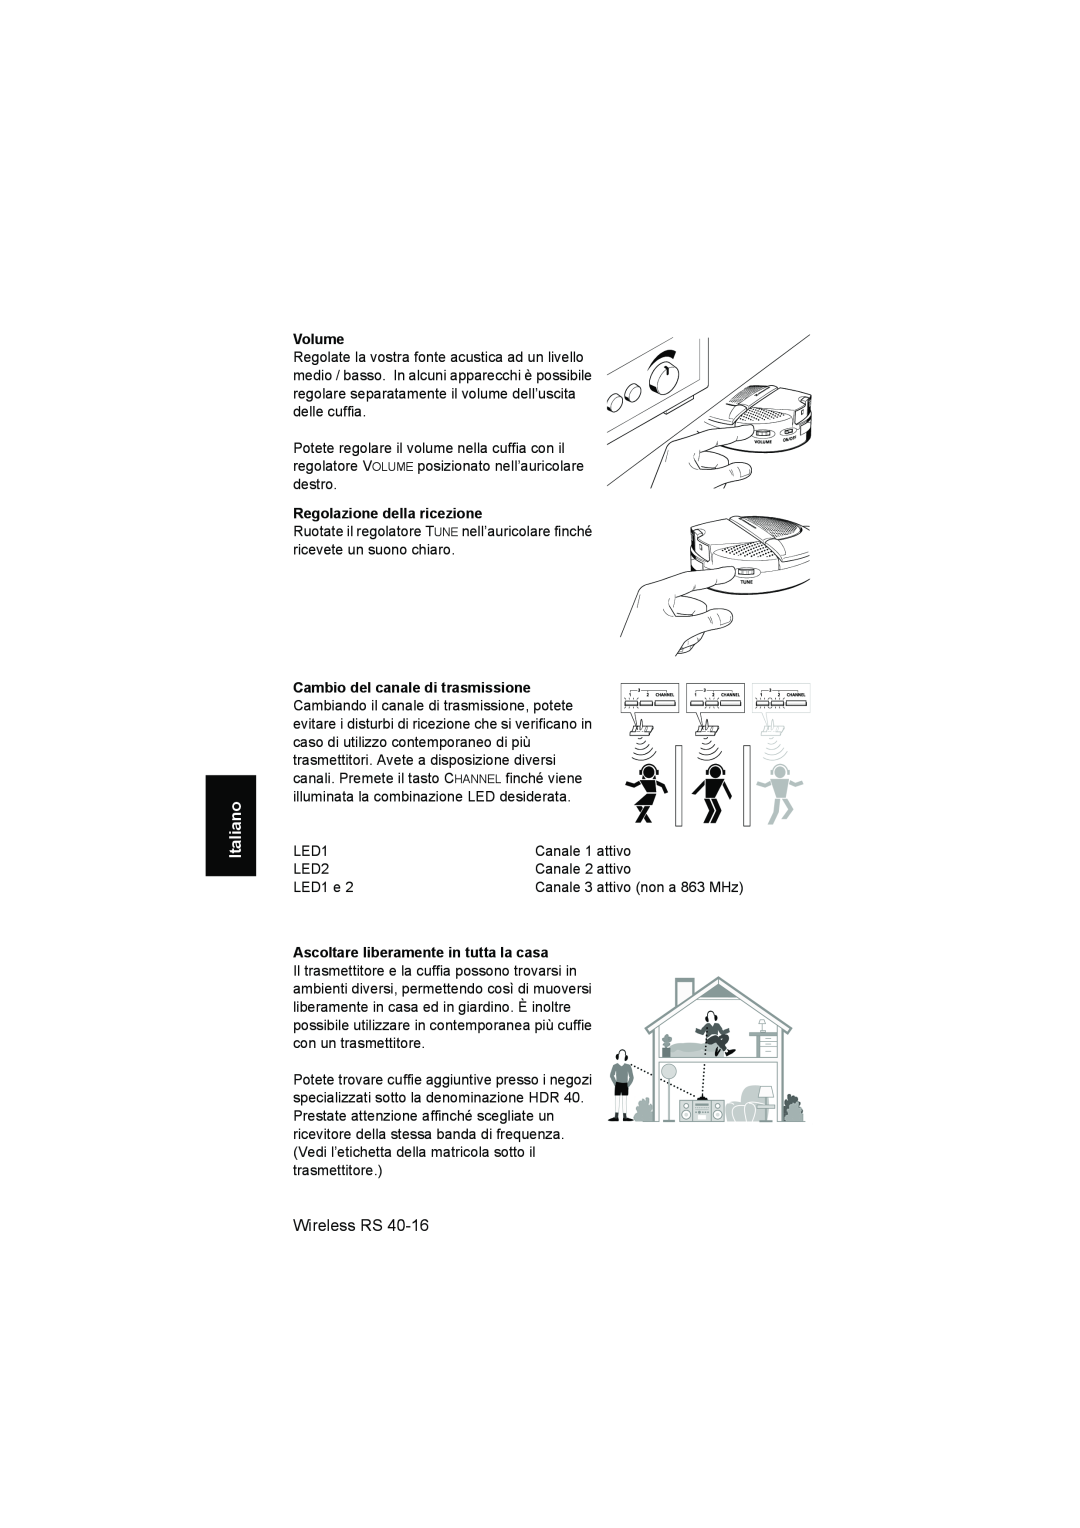 Sennheiser RS 40 Volume, Regolazione della ricezione, Ascoltare liberamente in tutta la casa, Italiano, Wireless RS 